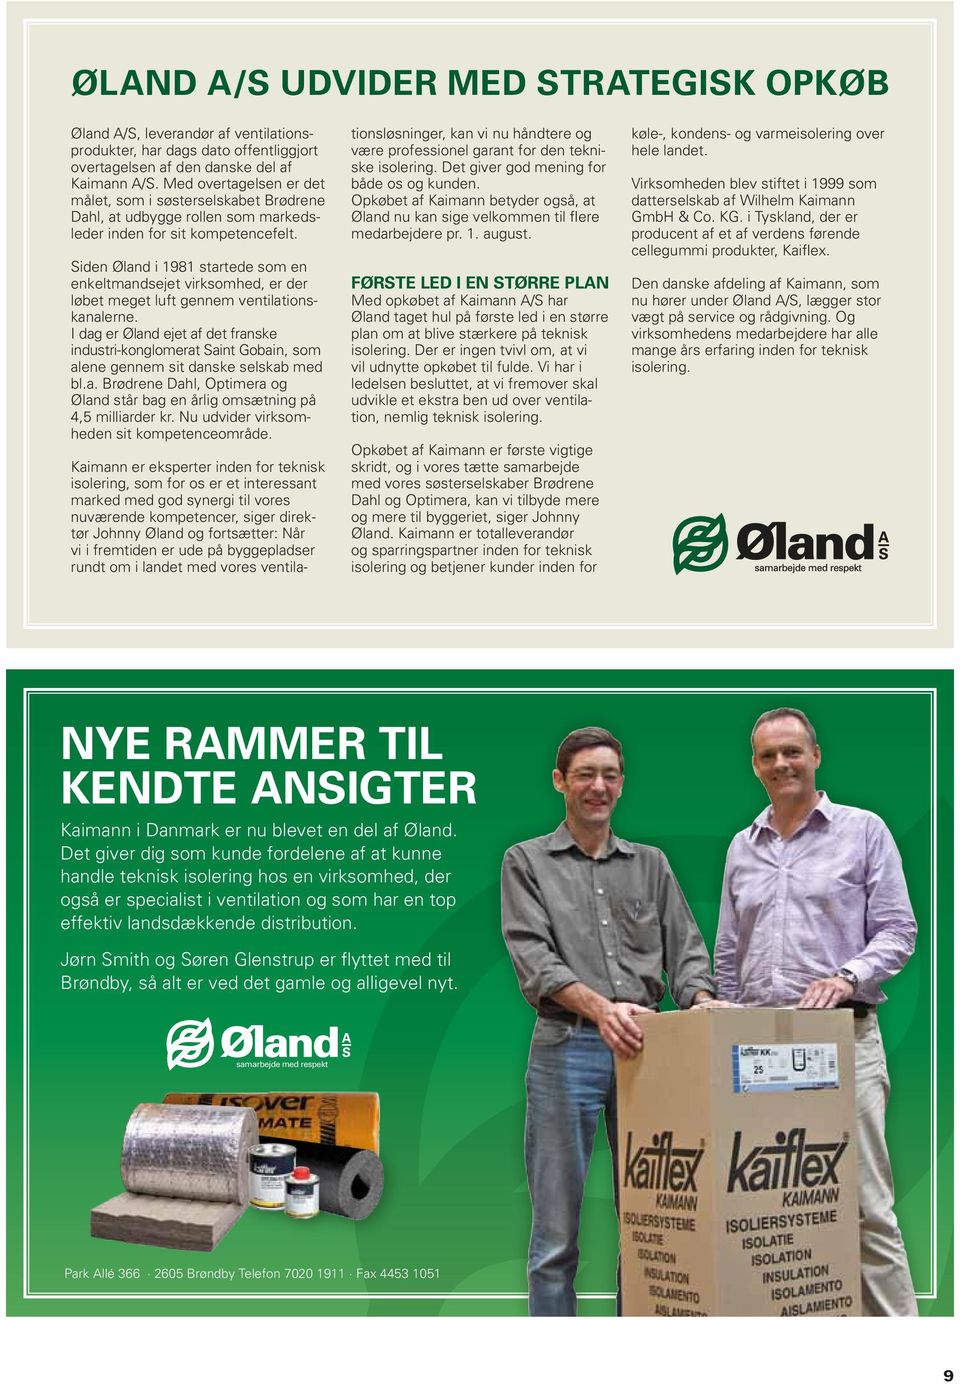 Siden Øland i 1981 startede som en enkeltmandsejet virksomhed, er der løbet meget luft gennem ventilationskanalerne.